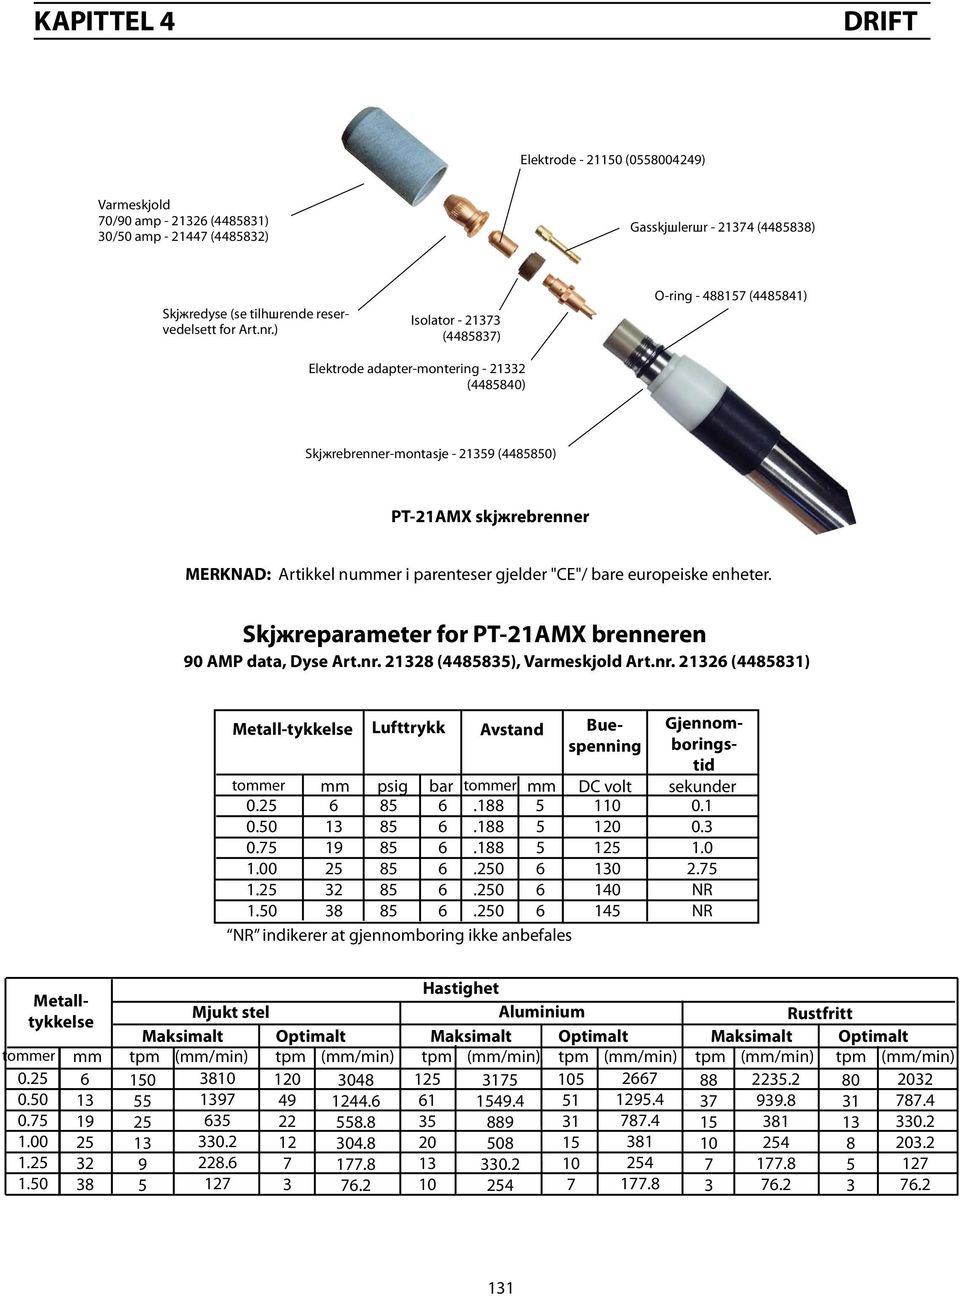 "CE"/ bare europeiske enheter. Skjжreparameter for PT-21AMX brenneren 90 AMP data, Dyse Art.nr. 228 (4488), Varmeskjold Art.nr. 22 (44881) Metall-tykkelse Lufttrykk tommer 0.2 0.0 0.7 1.00 1.2 1.